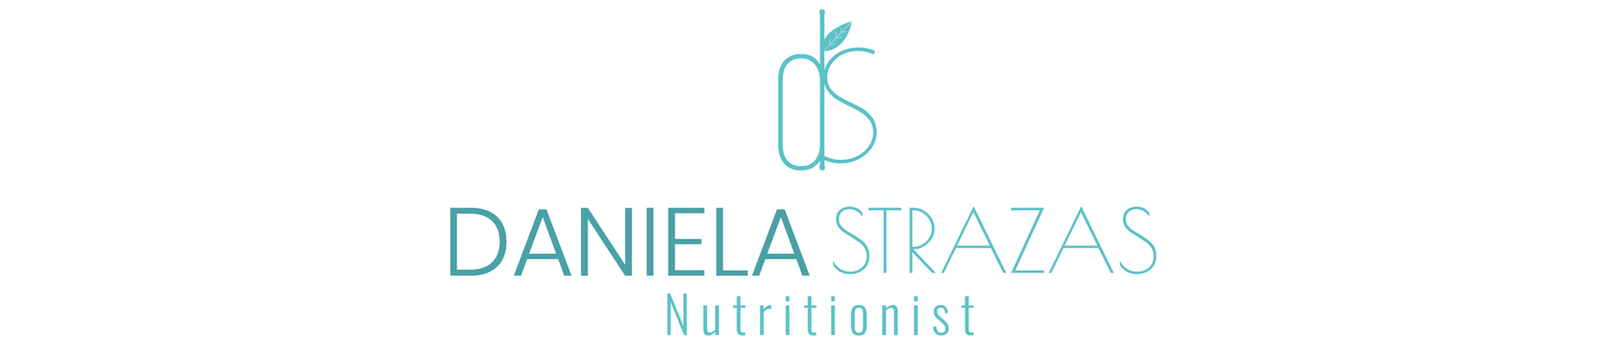 Daniela Strazas Nutritionist